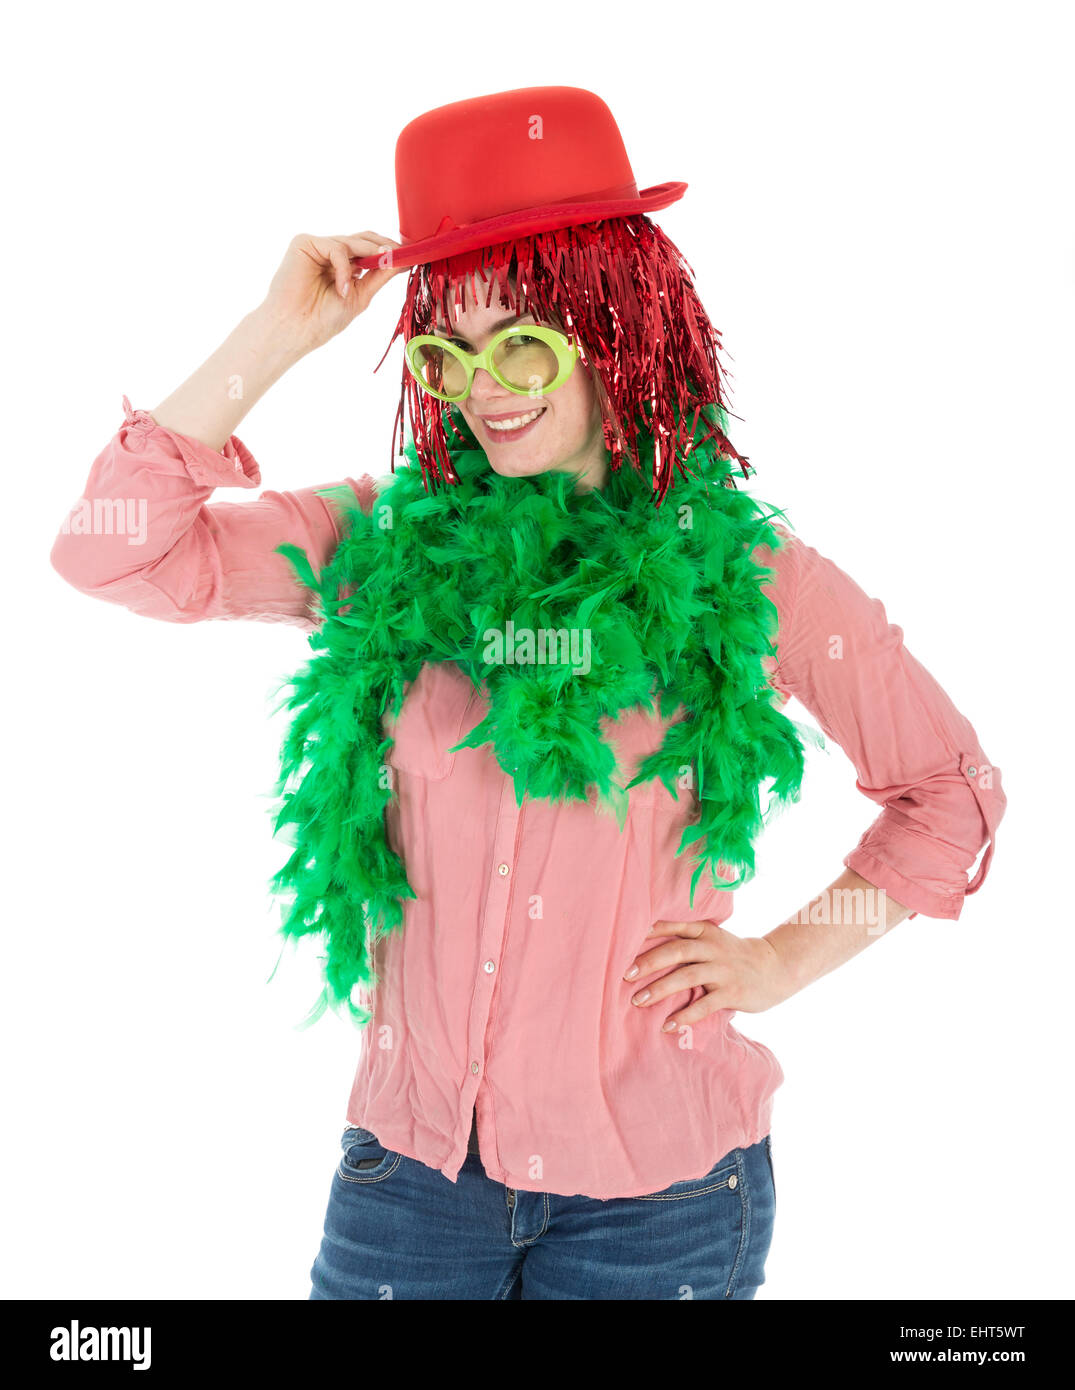 Frau im Karnevalskostüm mit Perücke und Melone, isoliert auf weiß Stockfoto